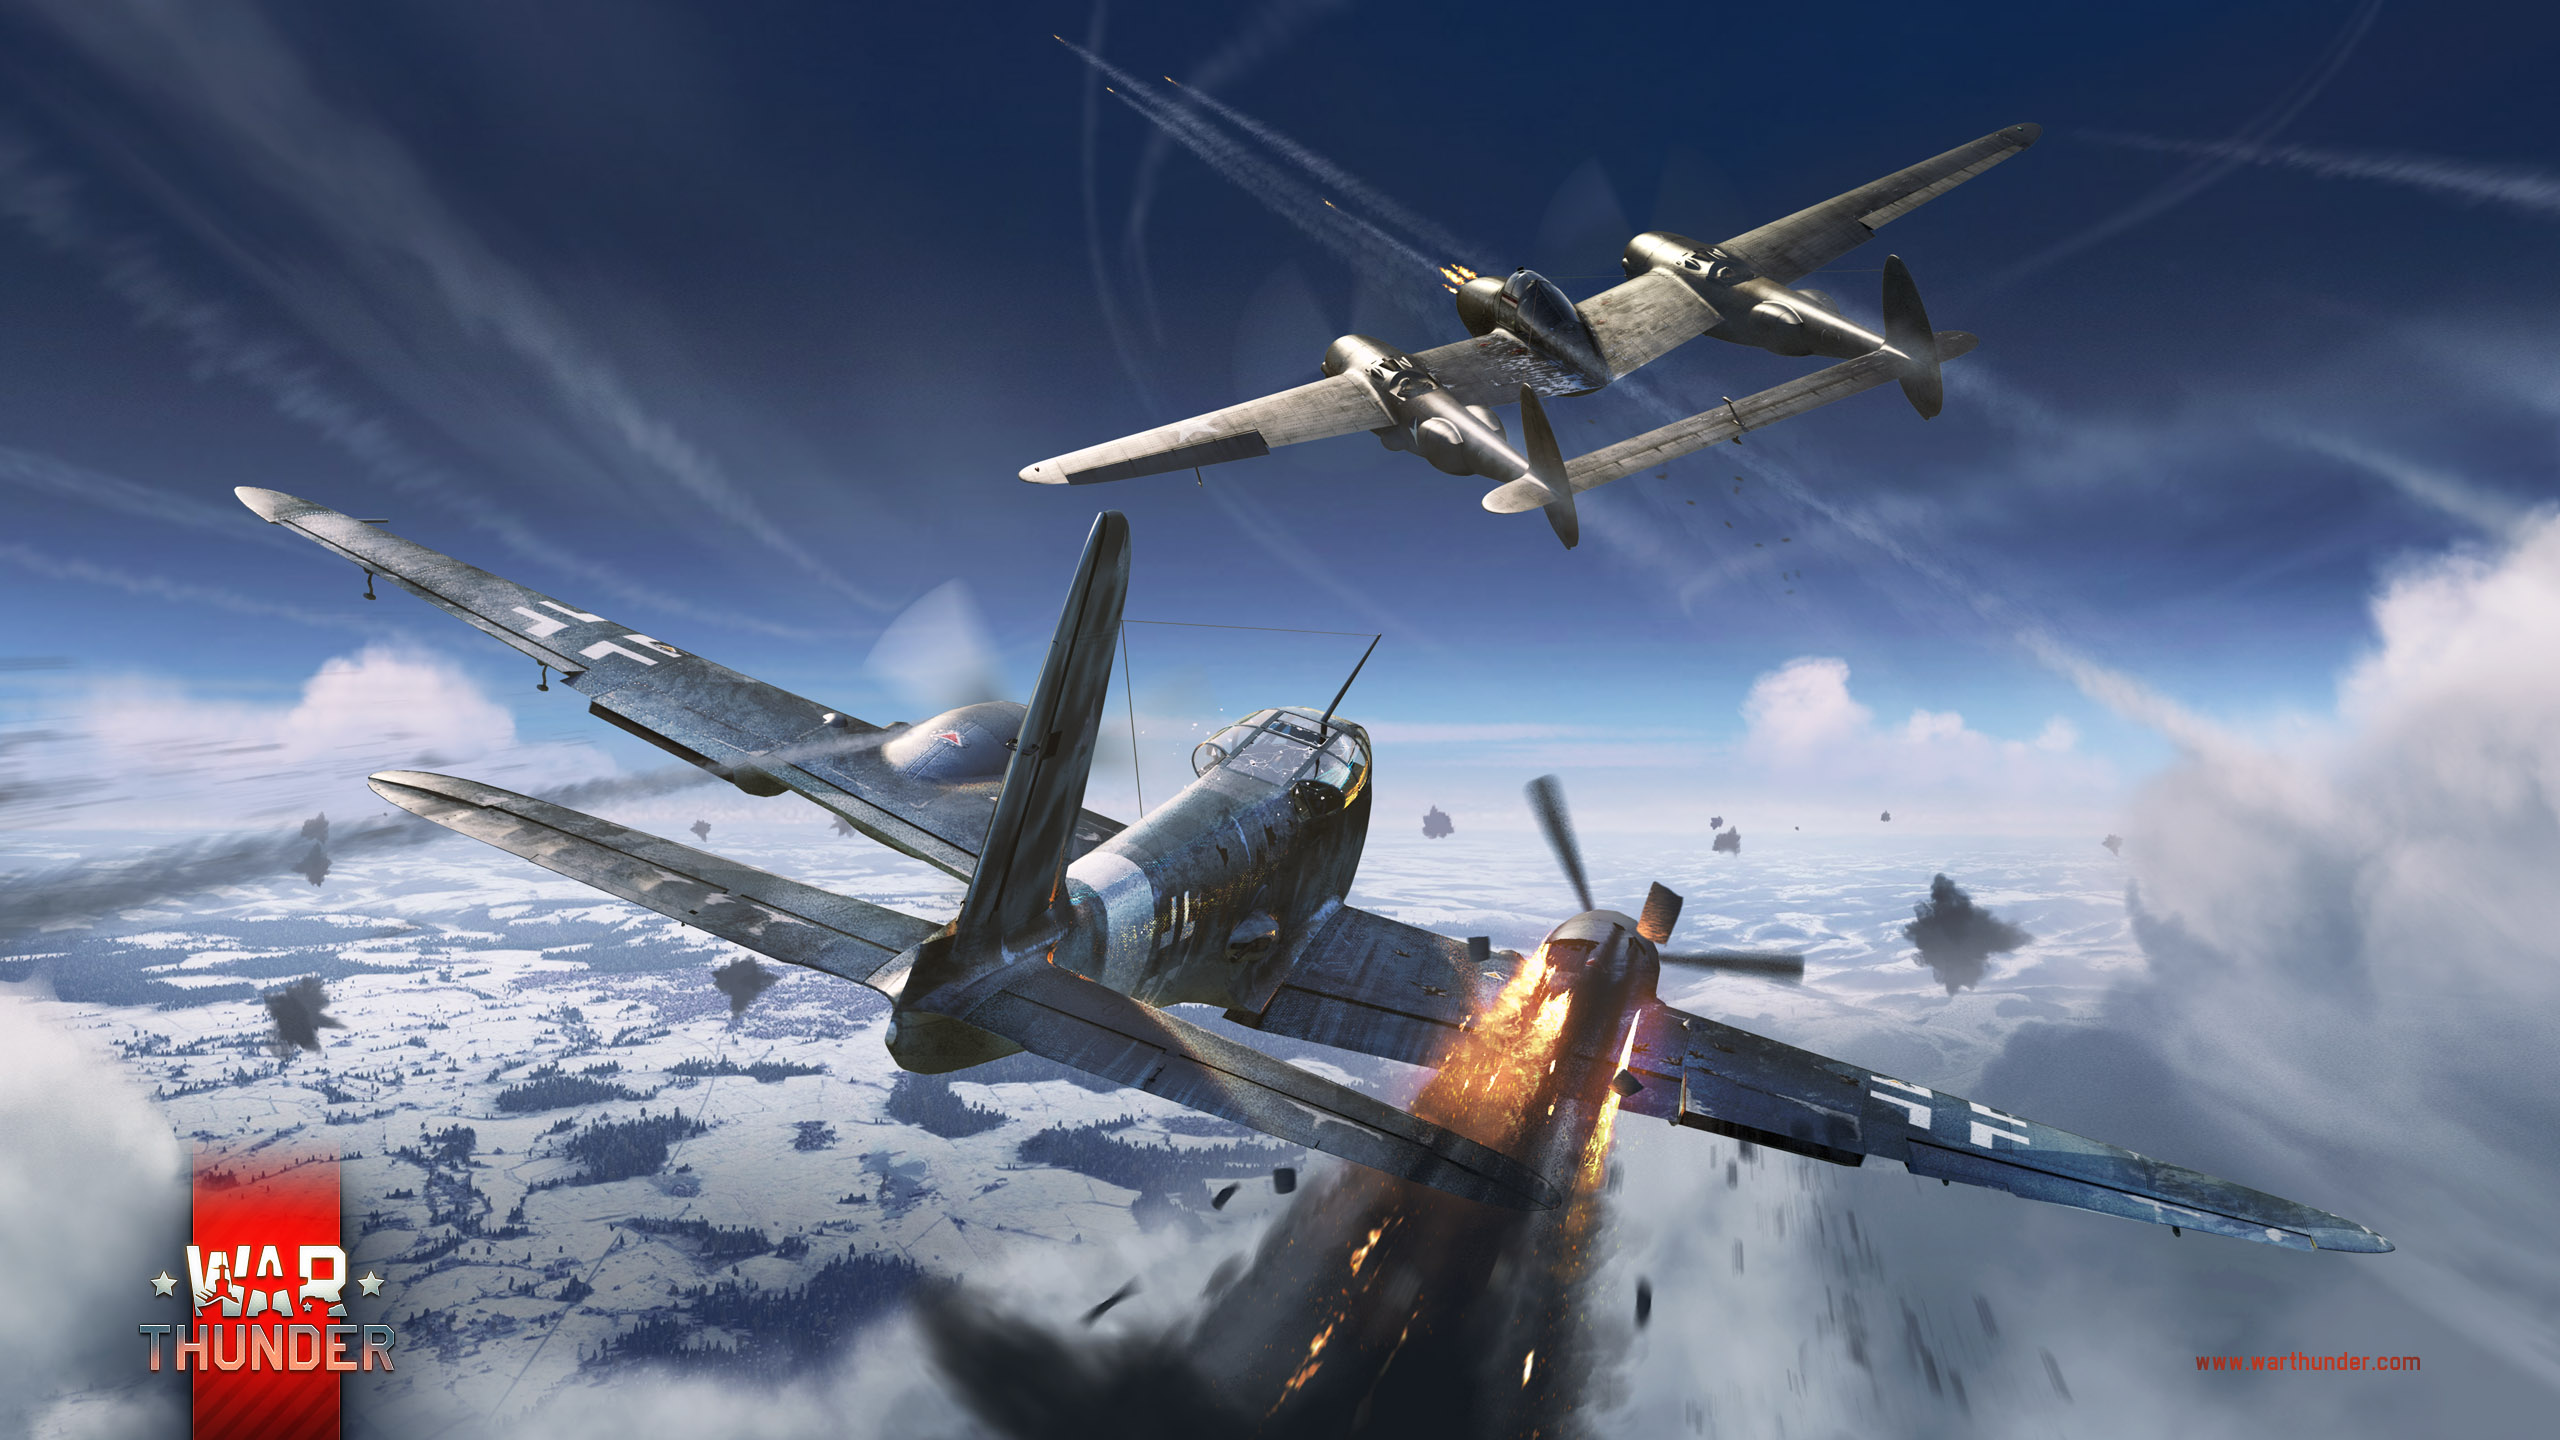 Papeis de parede War Thunder Aviãos Caça Avião Explosão Guerra